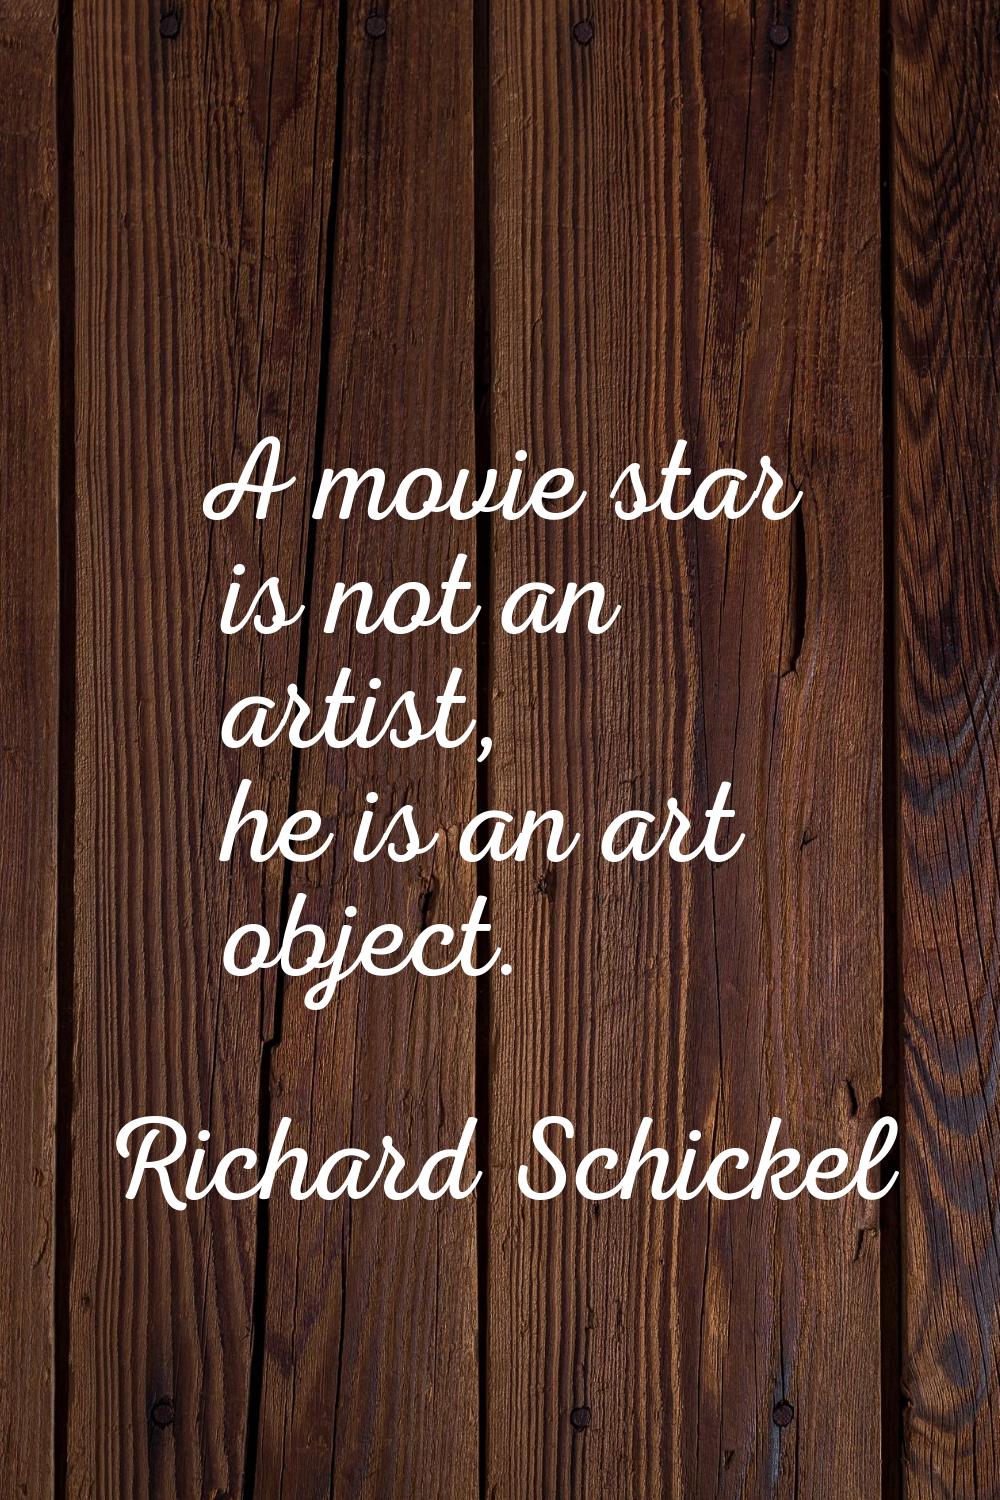 A movie star is not an artist, he is an art object.